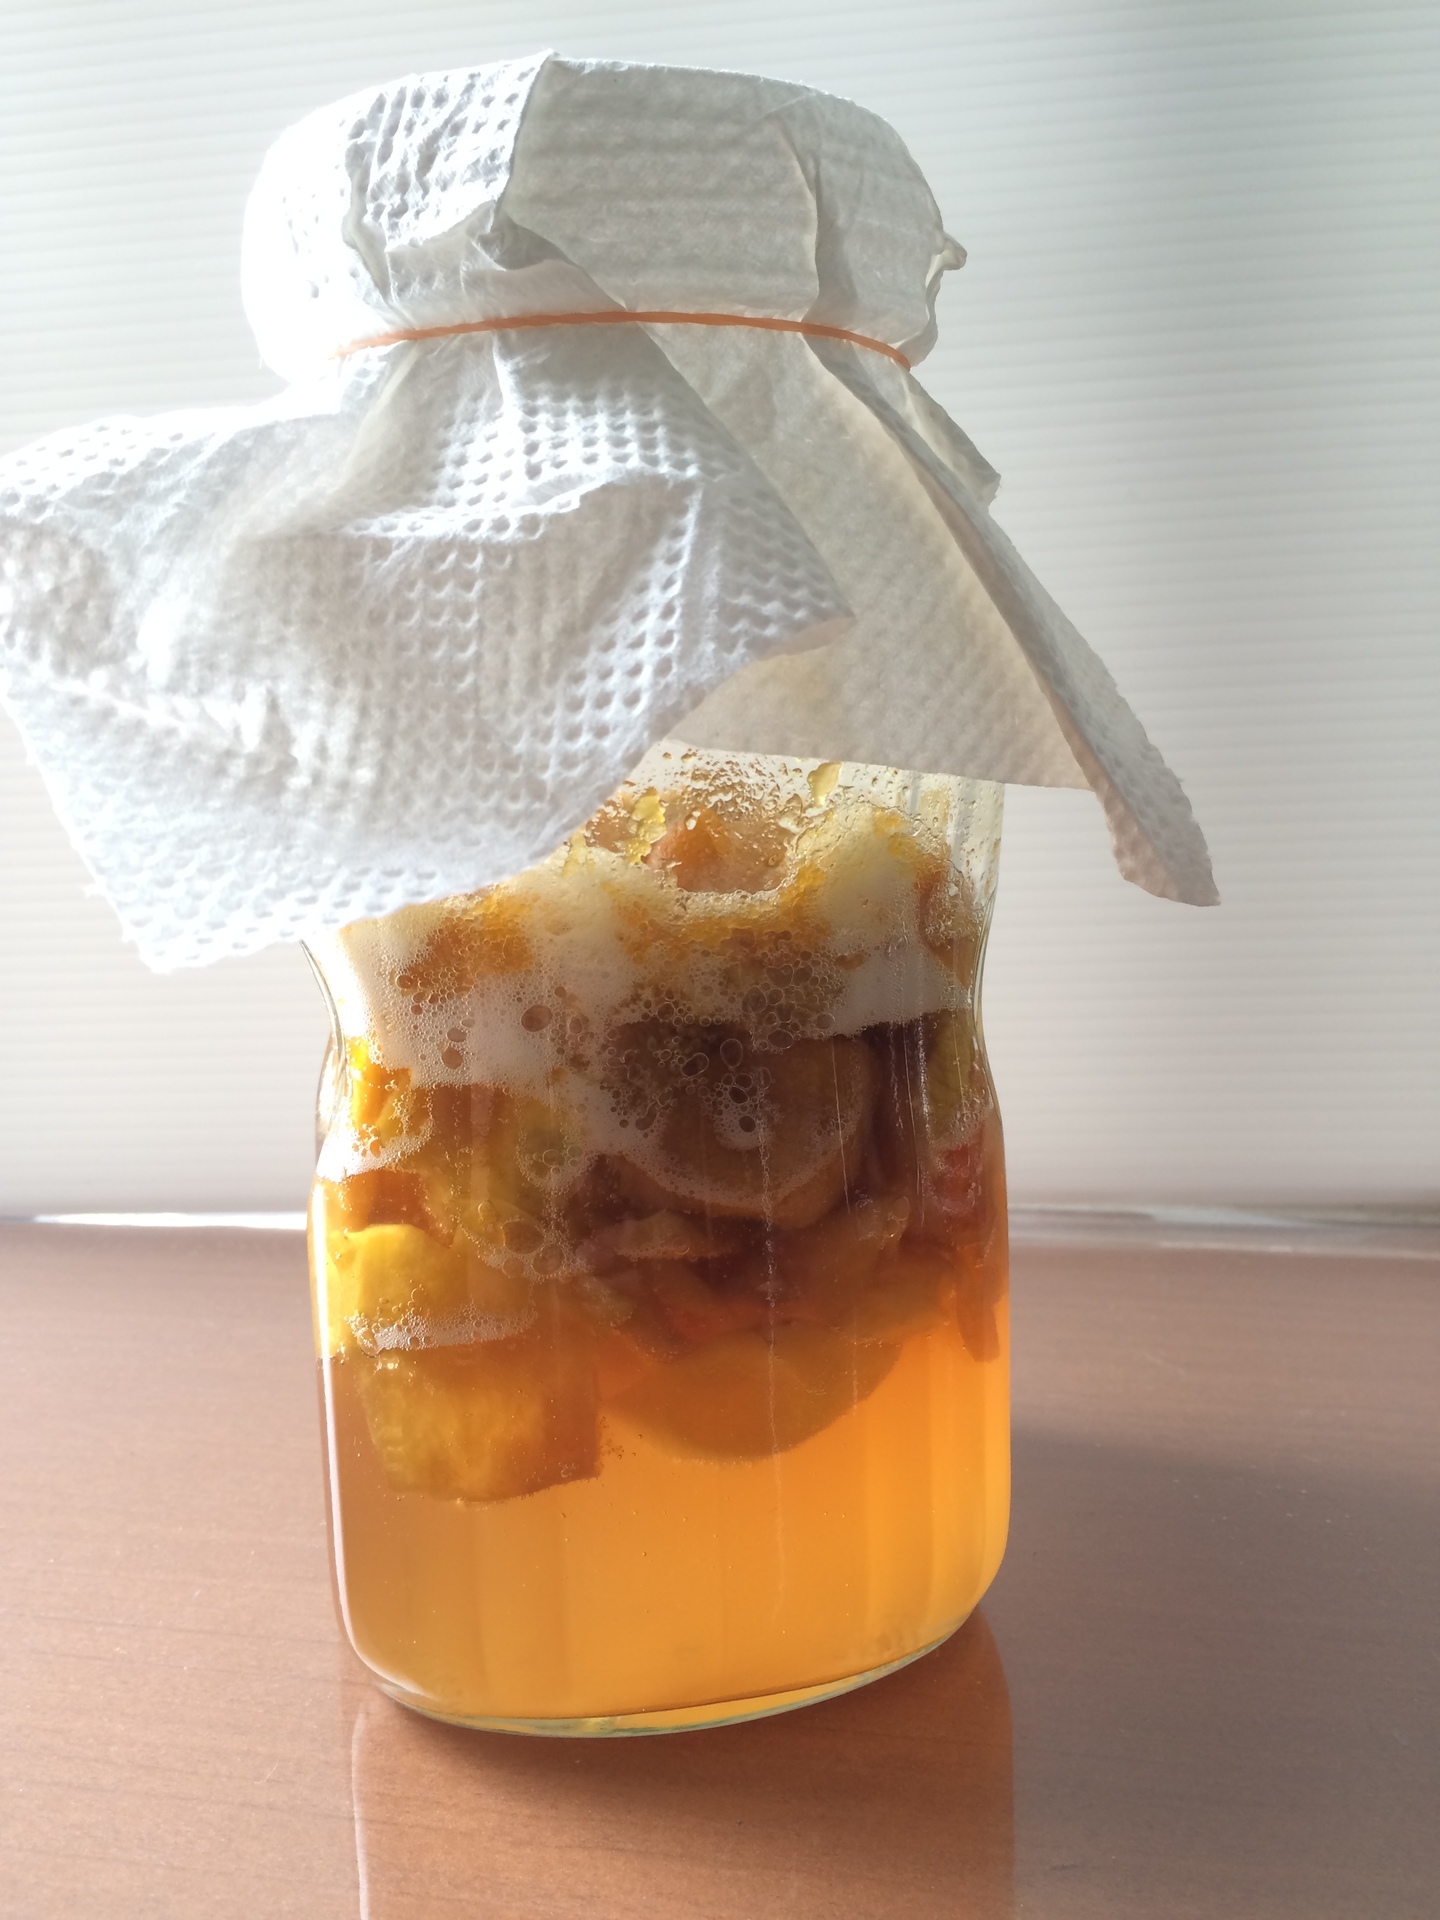 初めての梅仕事 ぷくぷく発酵した梅酵素ジュースをこし 梅の実は梅ジャムに うさぎと発酵